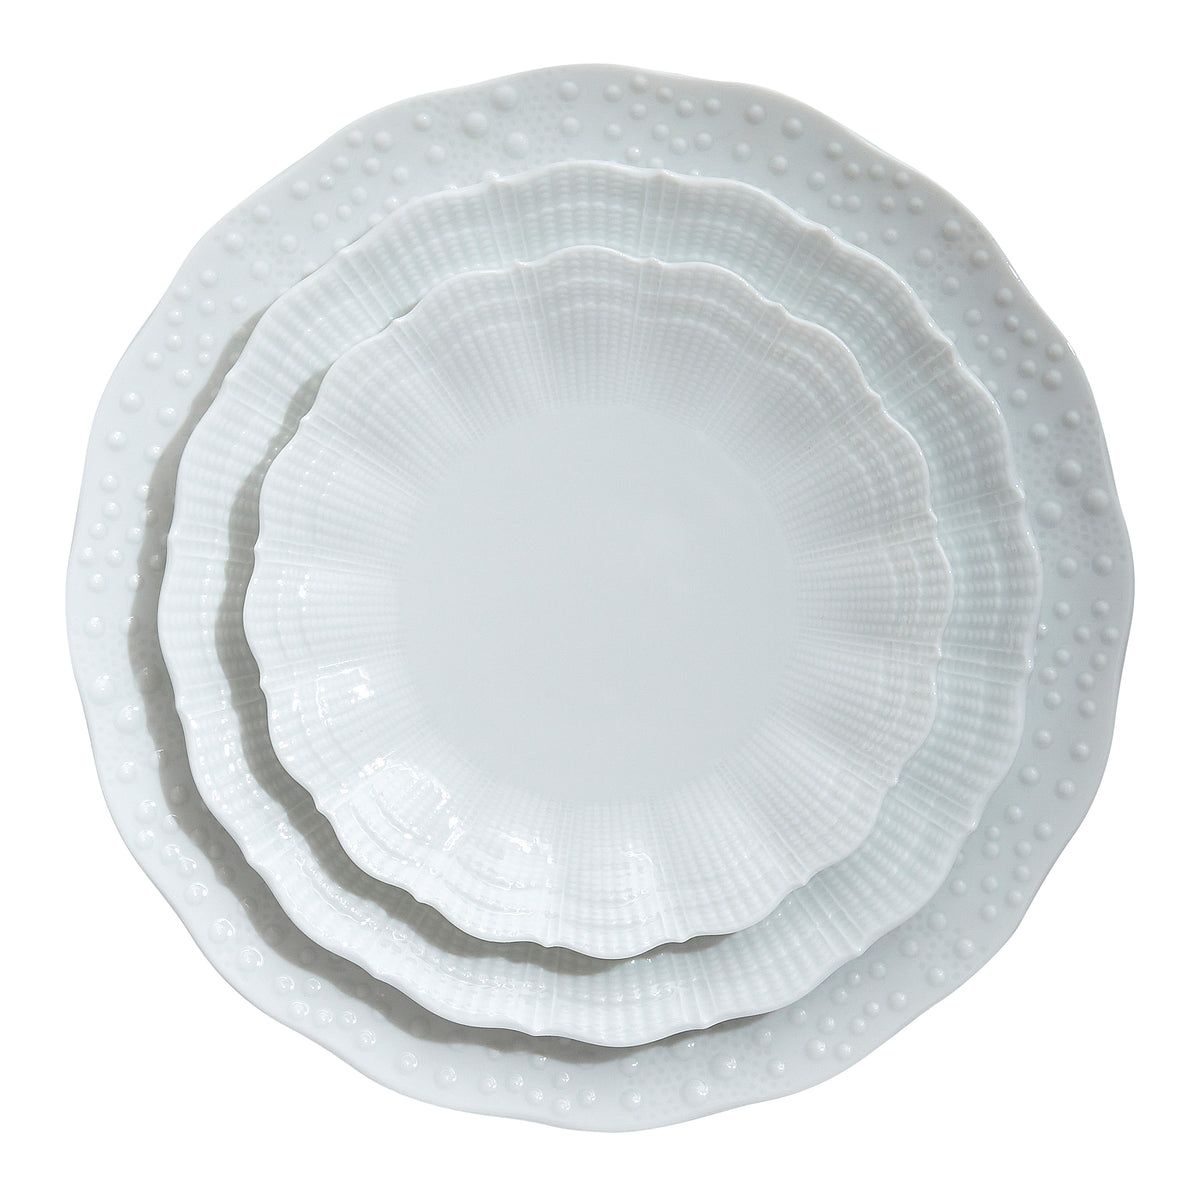 Corail Porcelain Dinner Plate